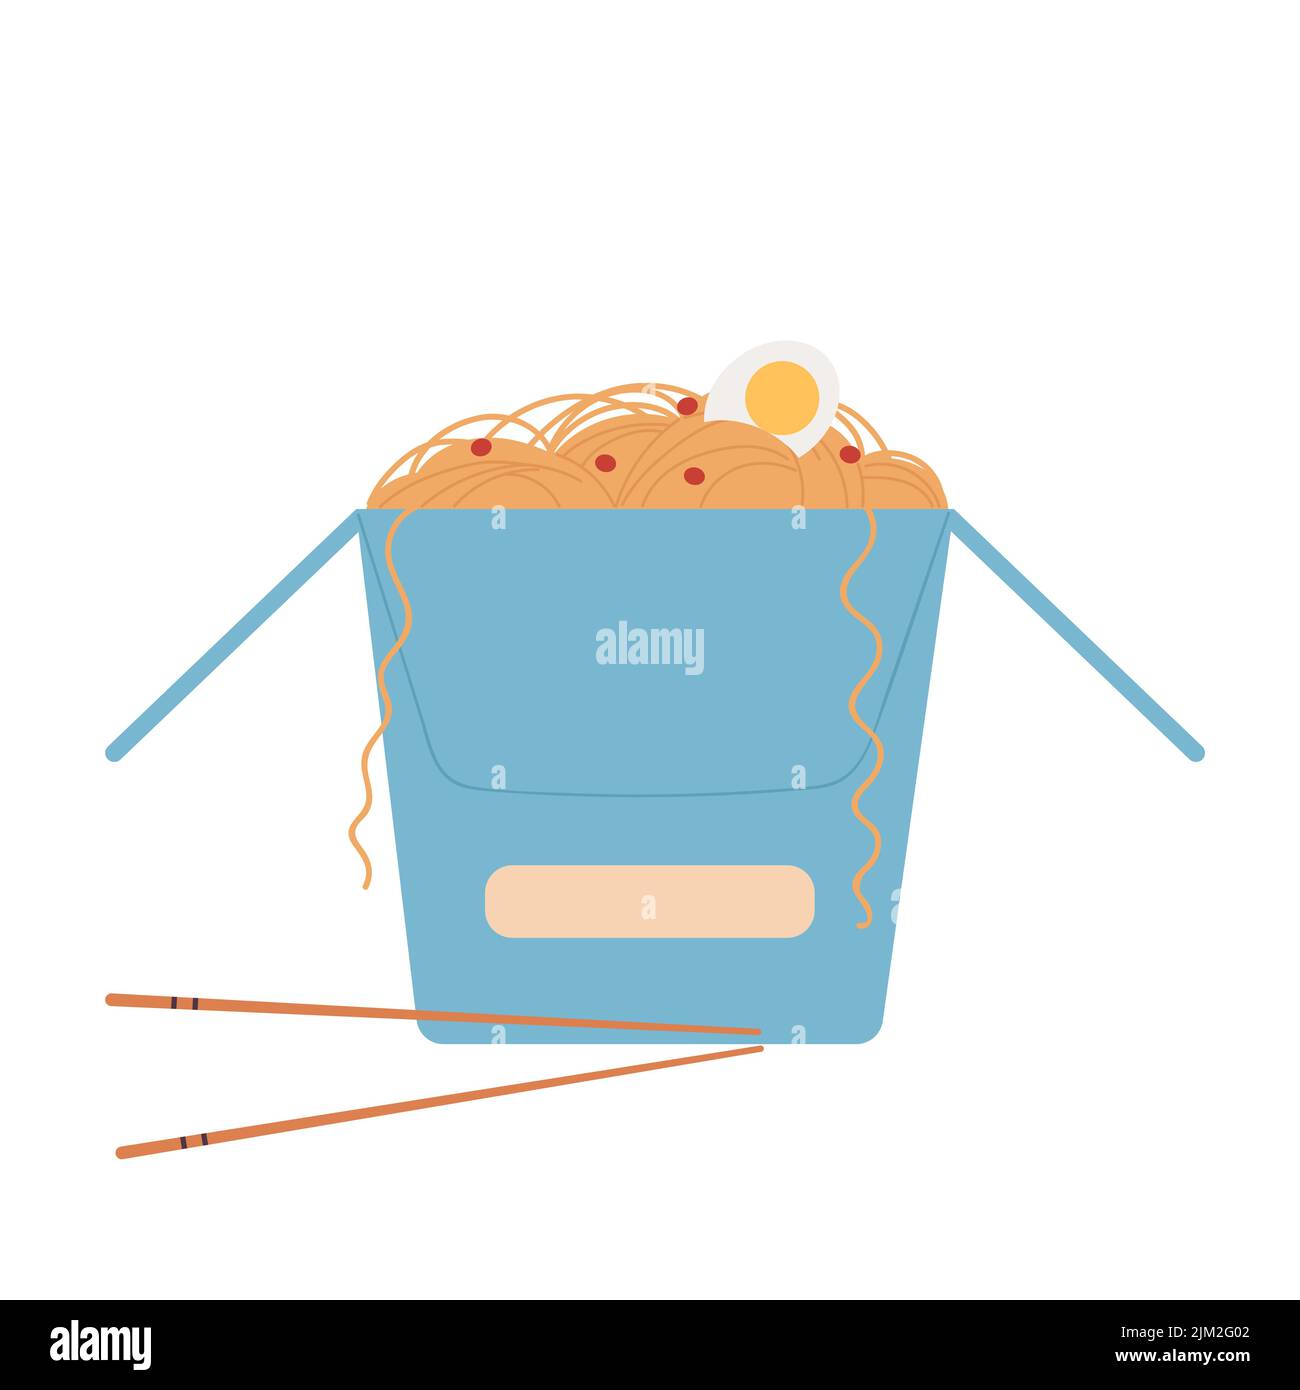 Services chinois de livraison de nourriture. Boîte de nouilles, illustration vectorielle de commande en ligne Illustration de Vecteur